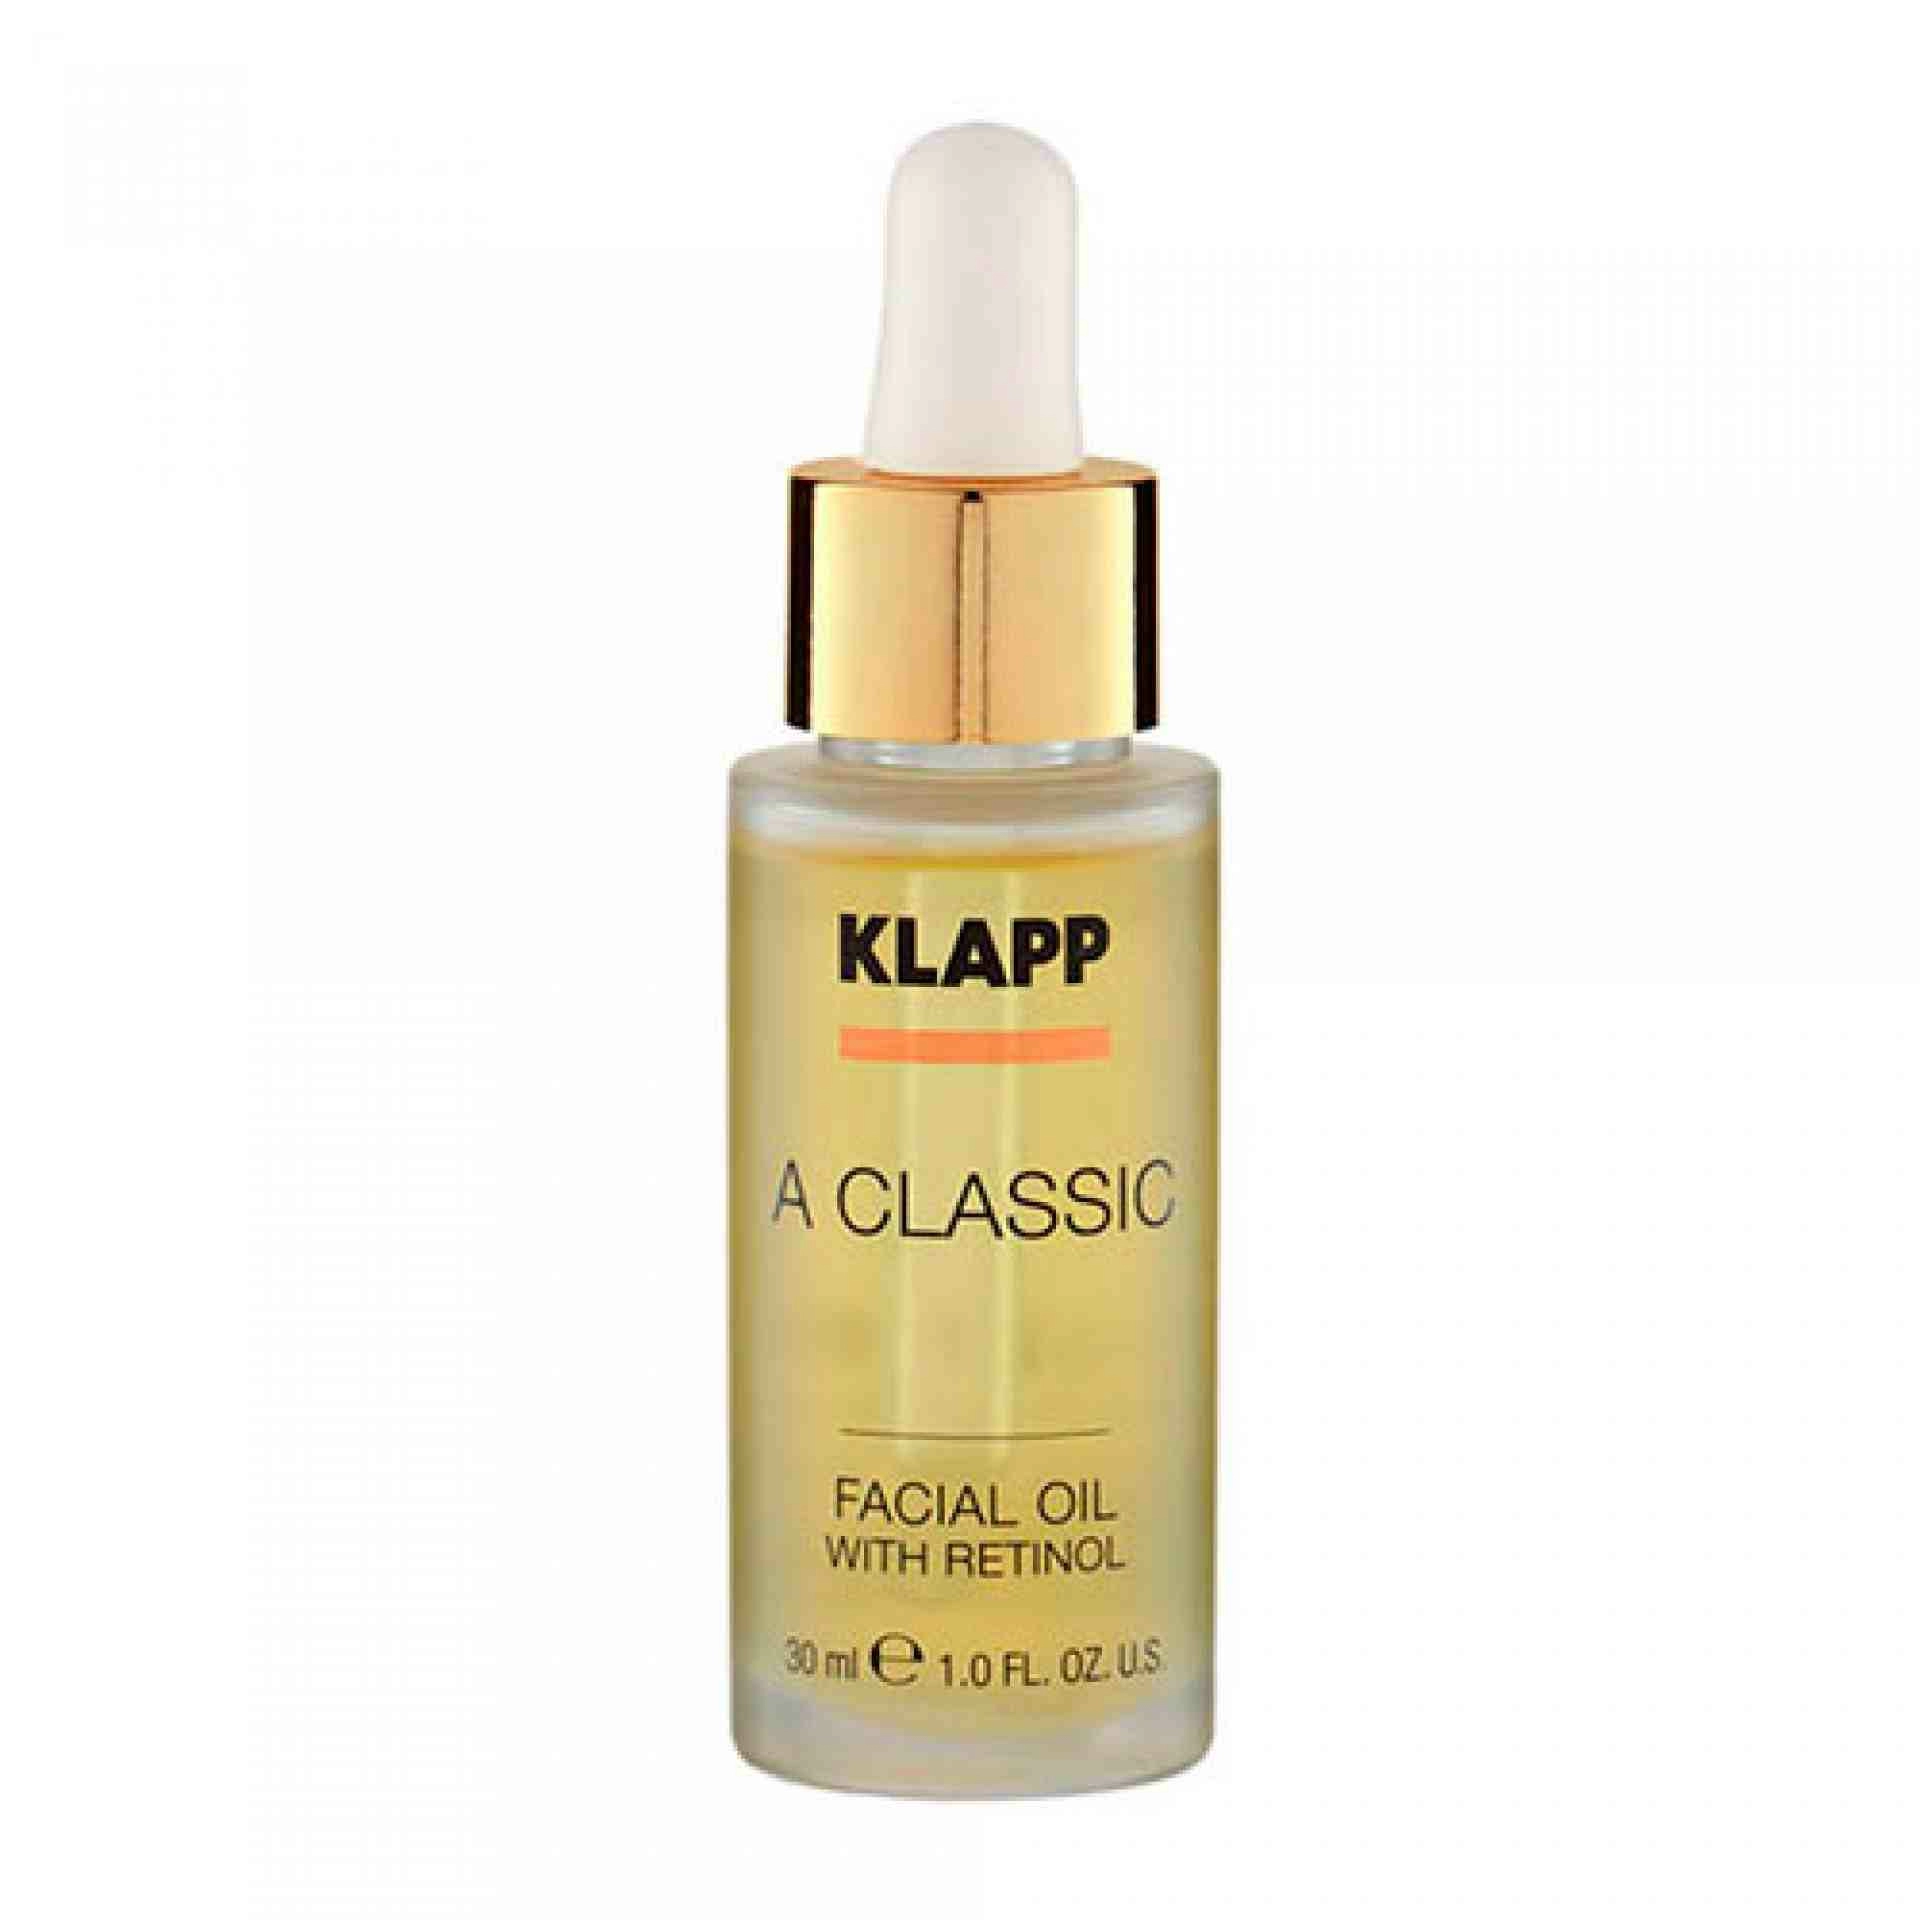 Facial Oil With Retinol | Aceite Facial Regenerante 30ml - A Classic - Klapp ®